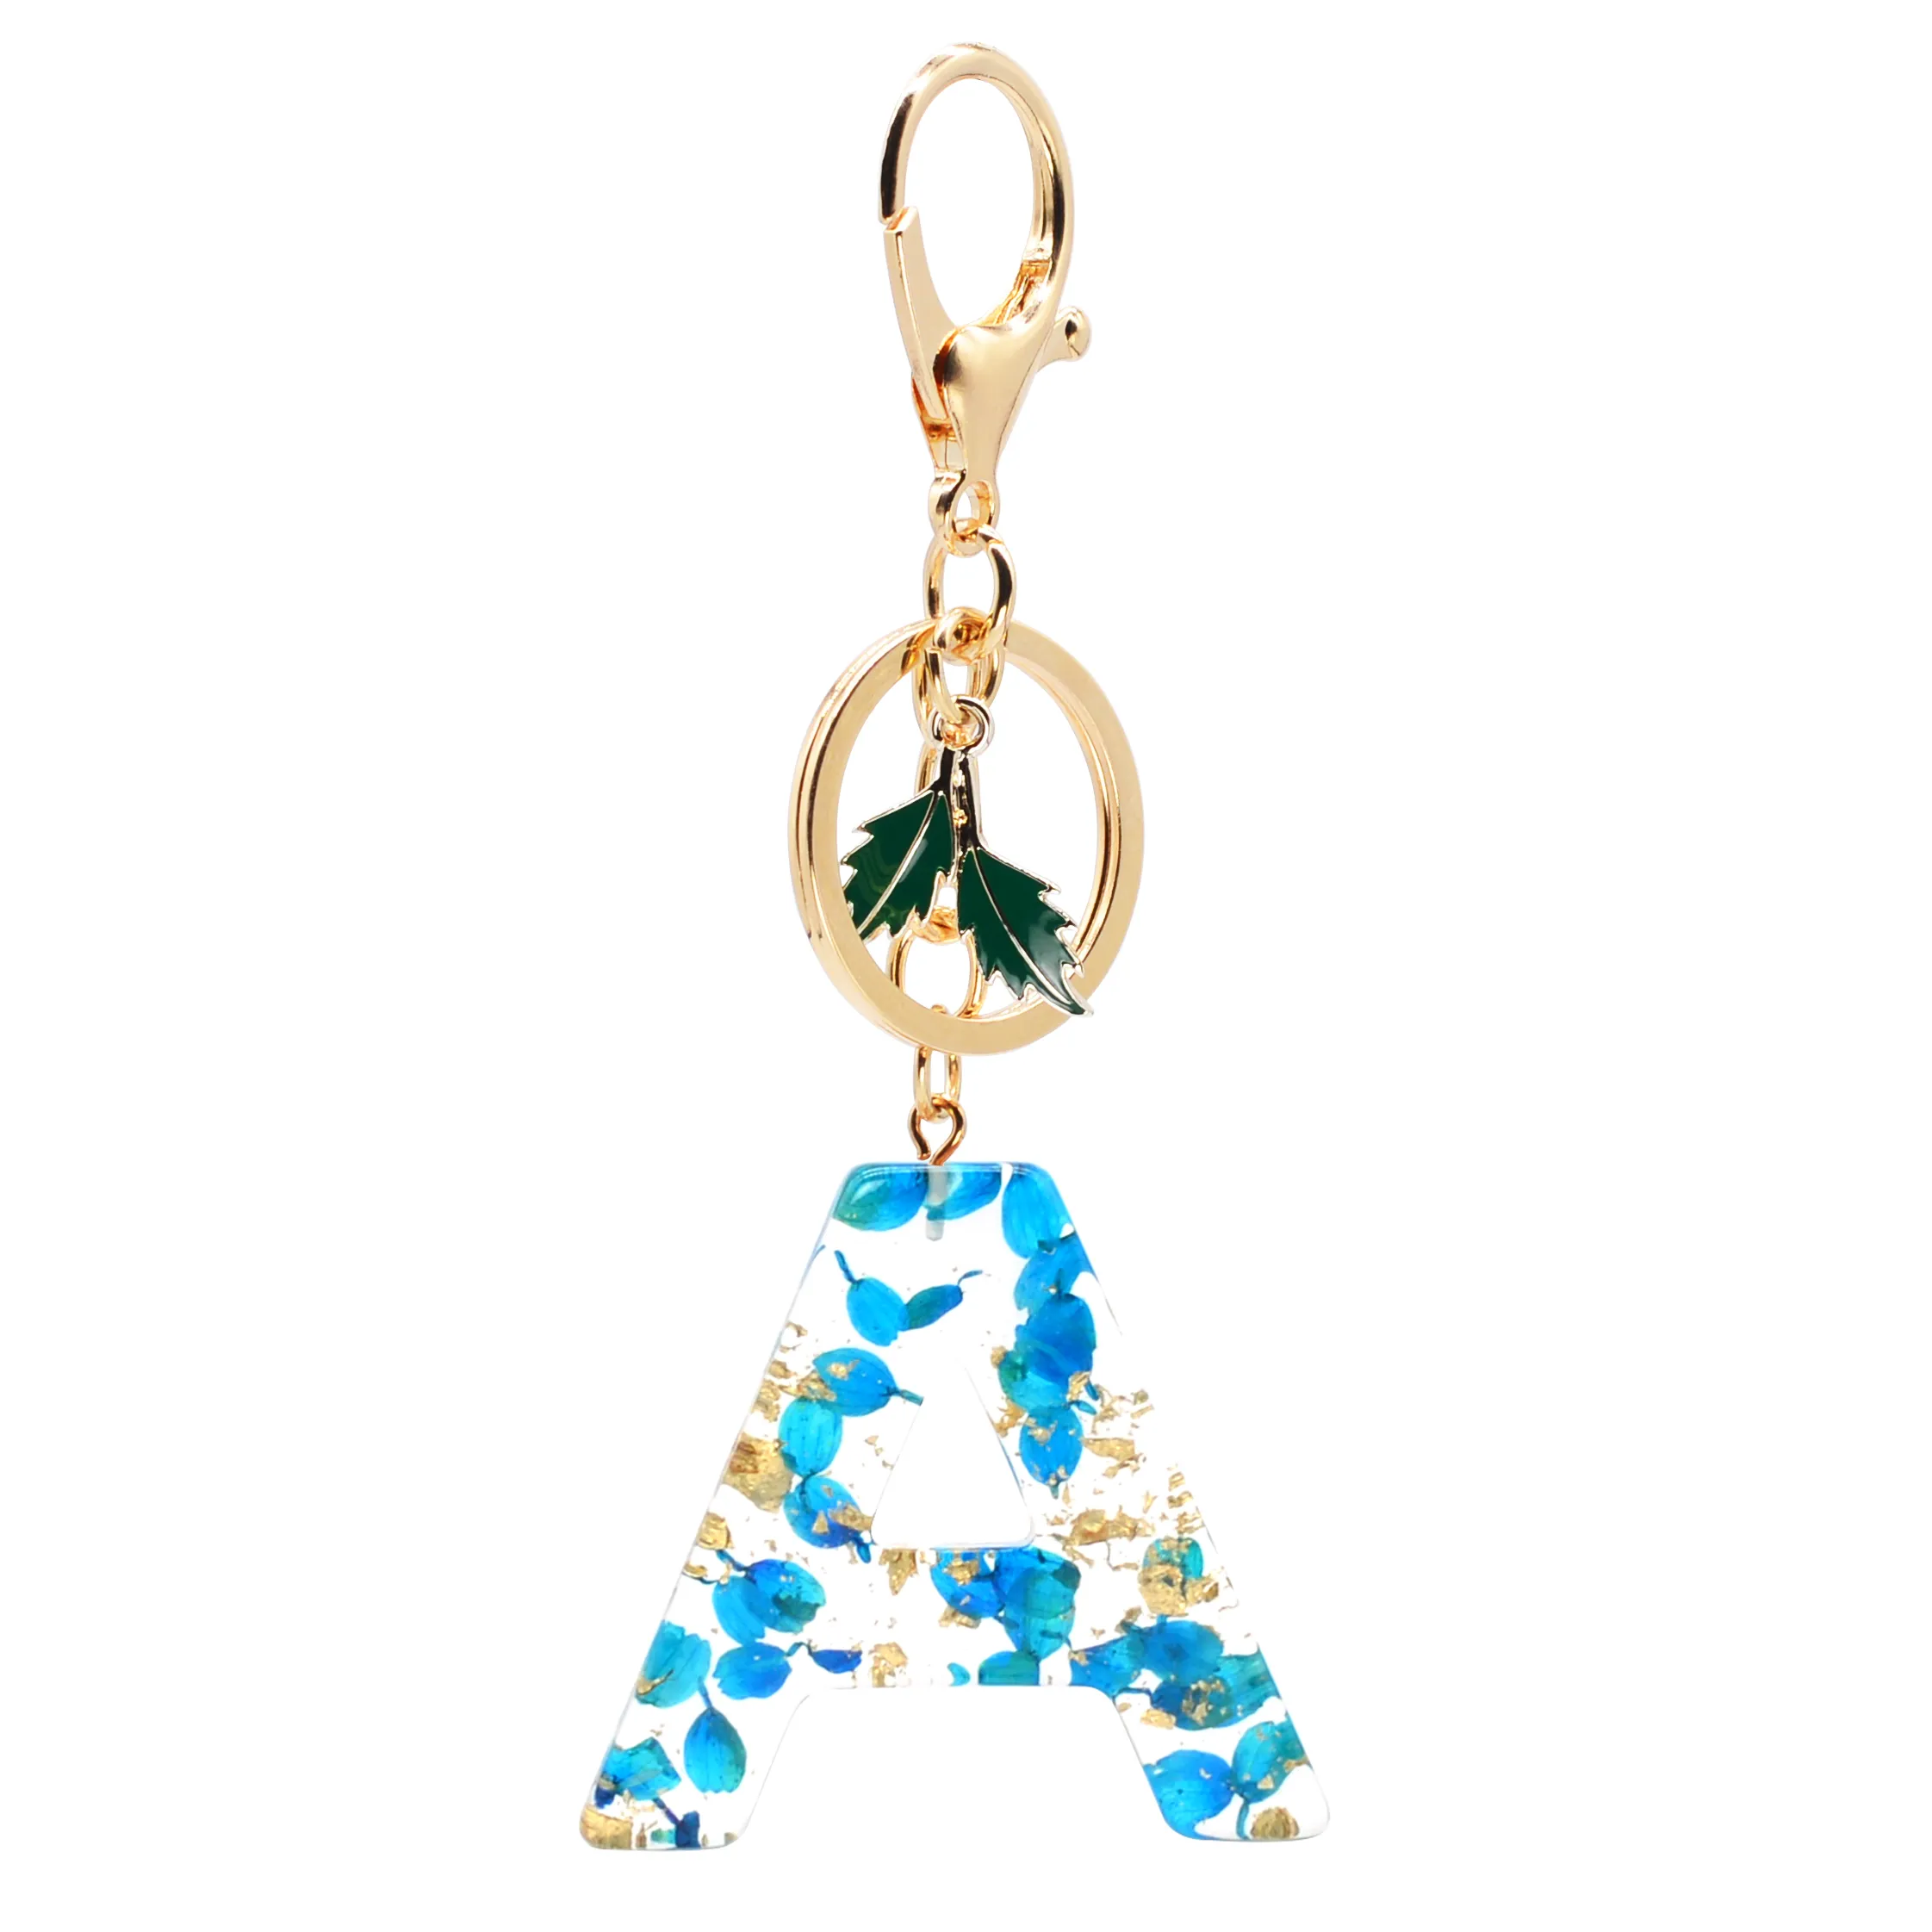 Nuova moda inglese lettera portachiavi in resina piccoli fiori blu con ciondolo a forma di ciondolo in lamina d'oro donna